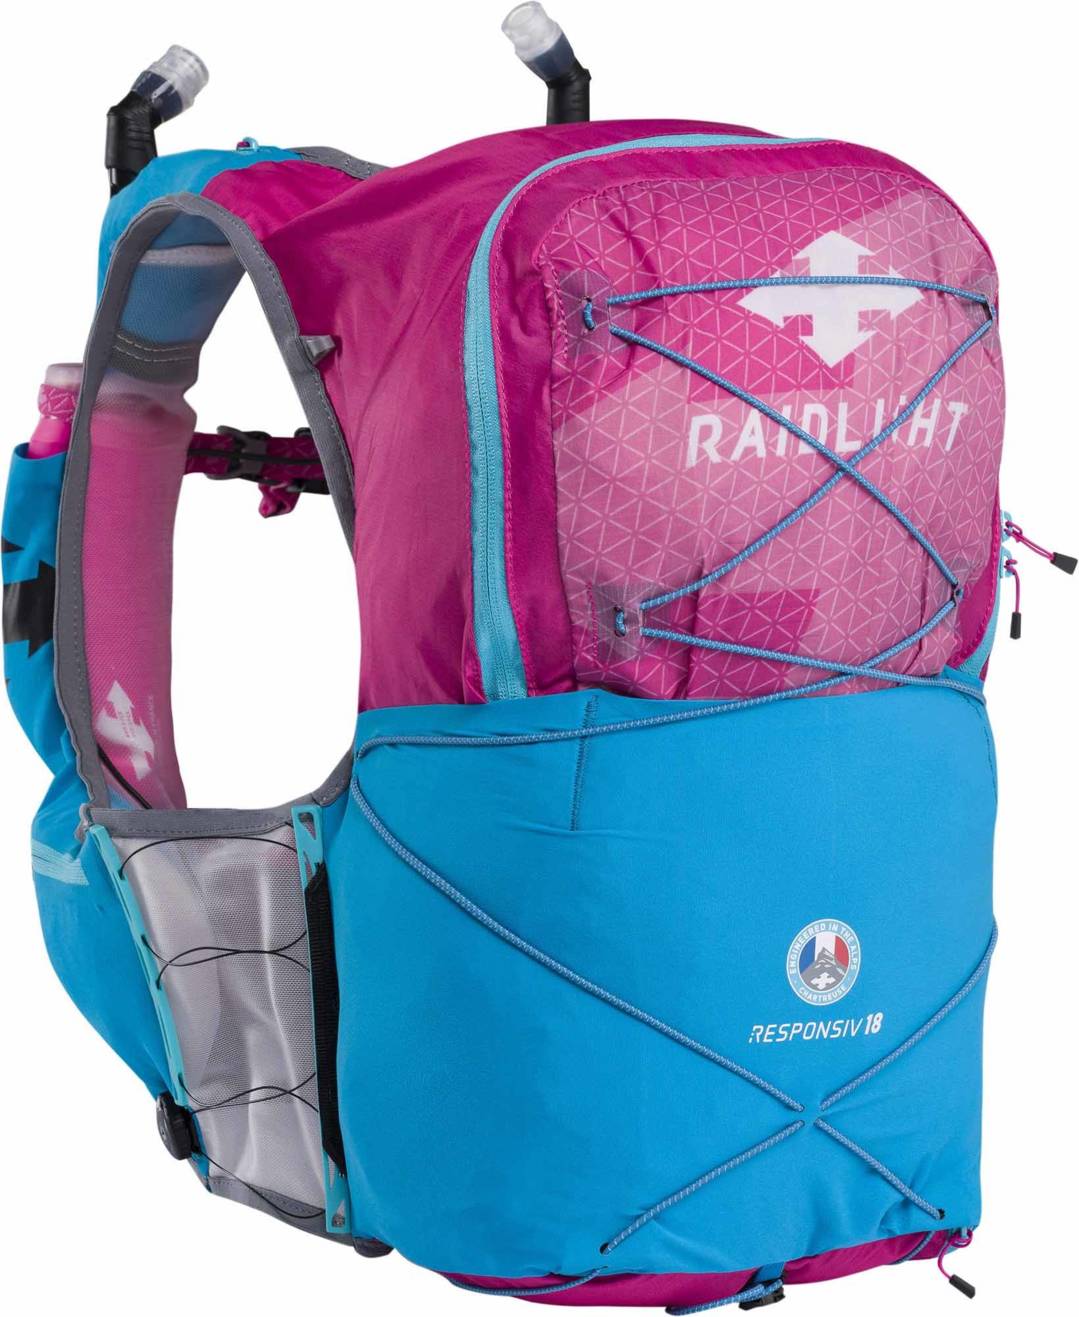 Raidlight Responsiv Vest 18L - Trail running backpack - Women's